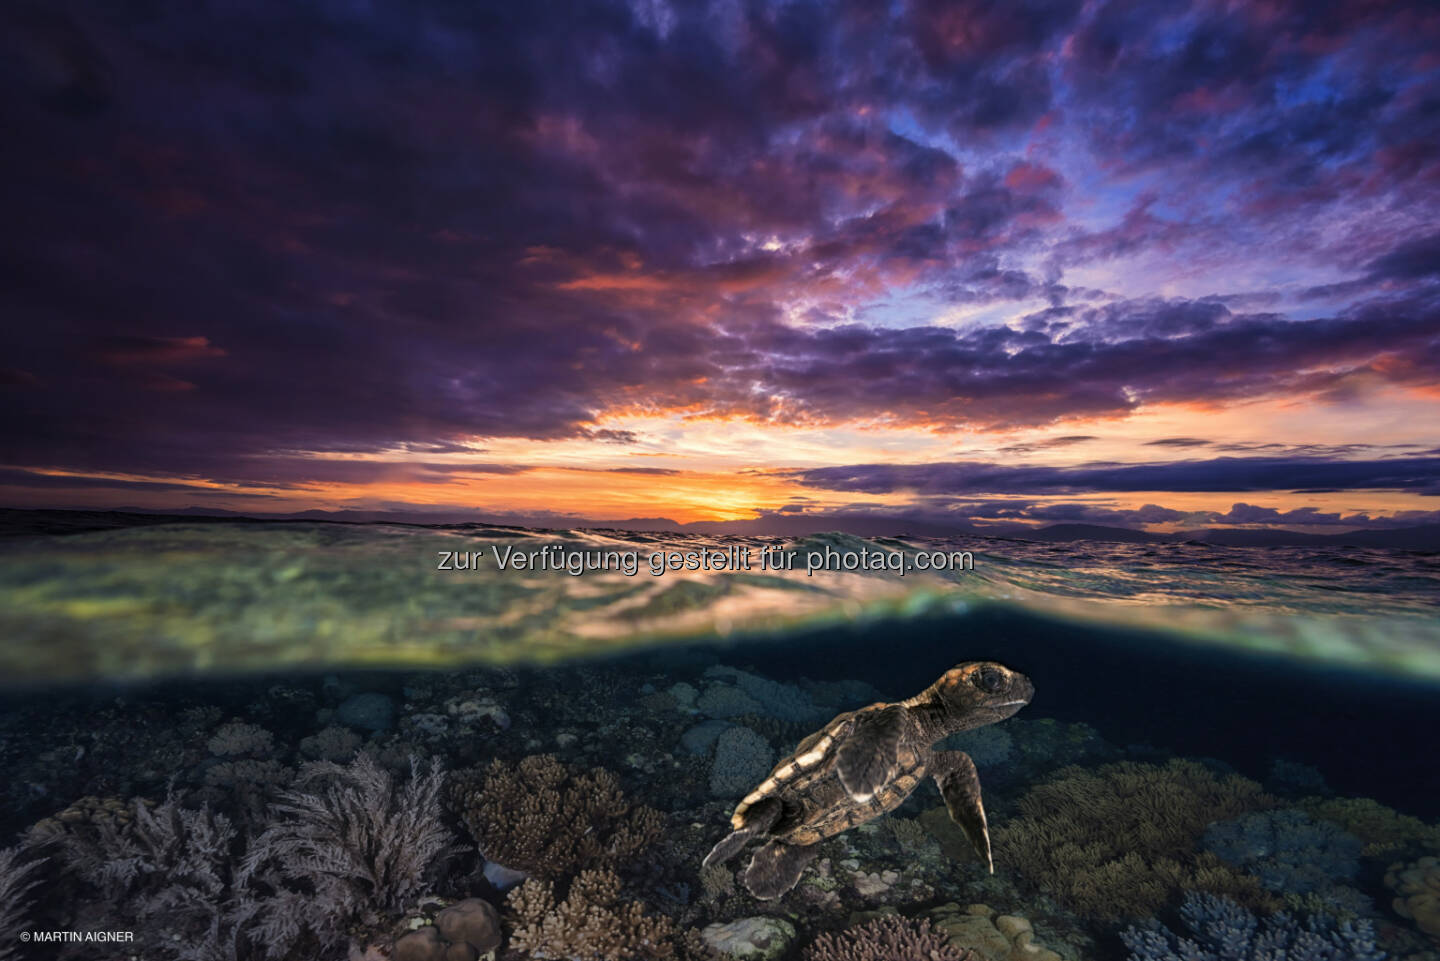 Cebu Philippinen, Sunrise Turtle : Terra Mater Magazin : Sieger des Fotowettbewerbes aus über 2000 Einsendungen gekürt : Das Siegerfoto 2015 von Martin Aigner zeigt eine frisch geschlüpfte Schildkröte unter Wasser – und gleichzeitig einen Sonnenaufgang vor der philippinischen Insel Cebu : Fotocredit: Martin Aigner